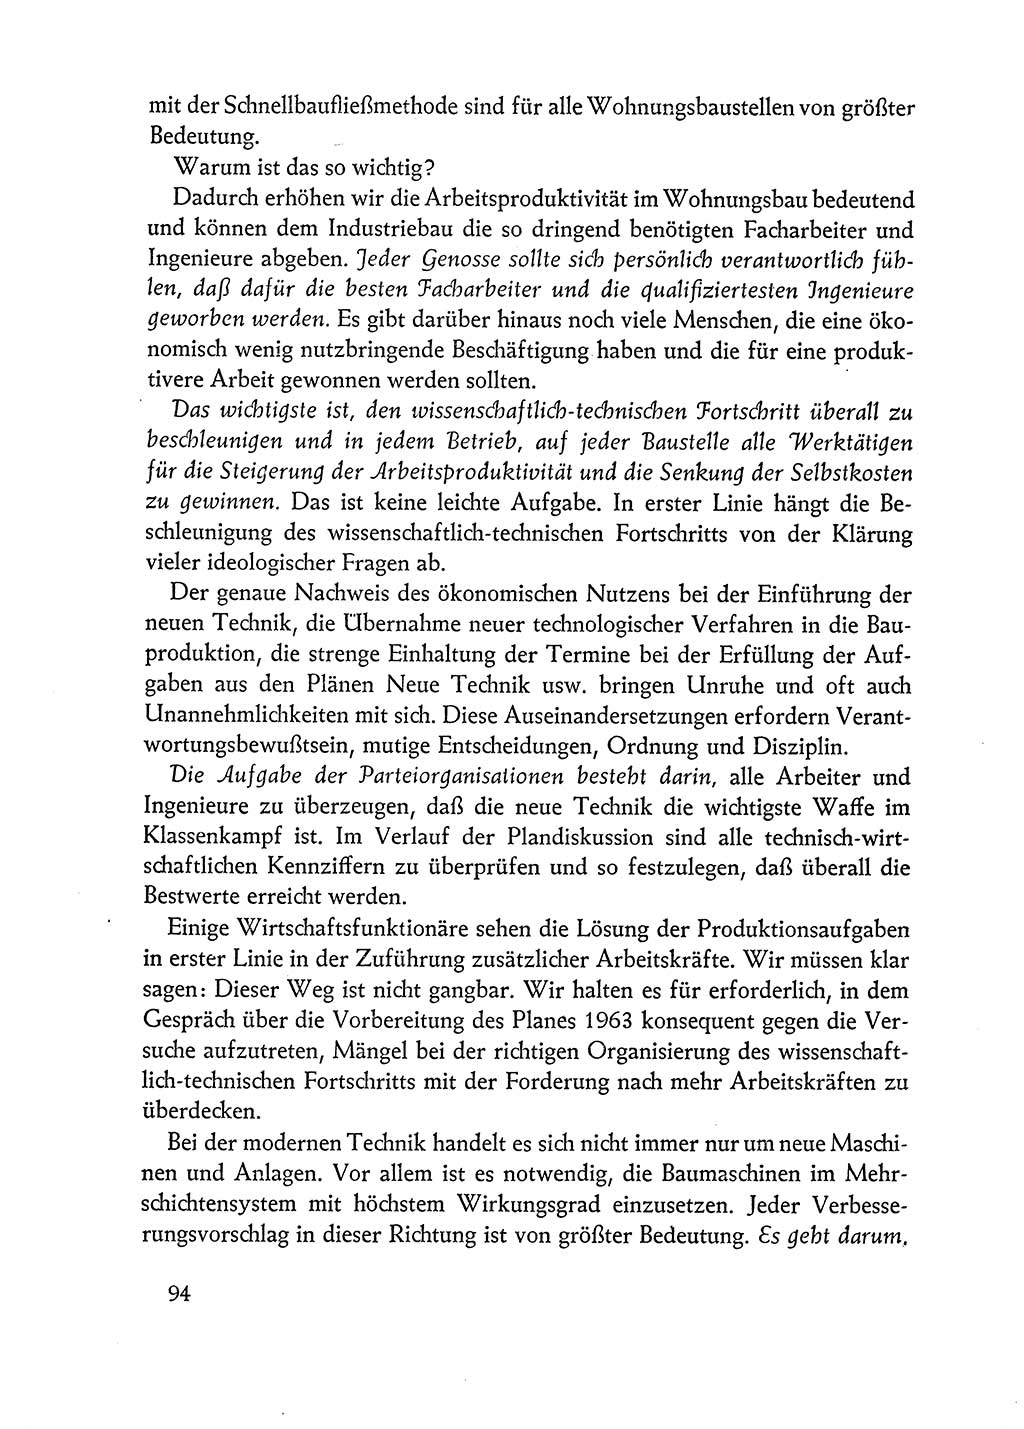 Dokumente der Sozialistischen Einheitspartei Deutschlands (SED) [Deutsche Demokratische Republik (DDR)] 1962-1963, Seite 94 (Dok. SED DDR 1962-1963, S. 94)